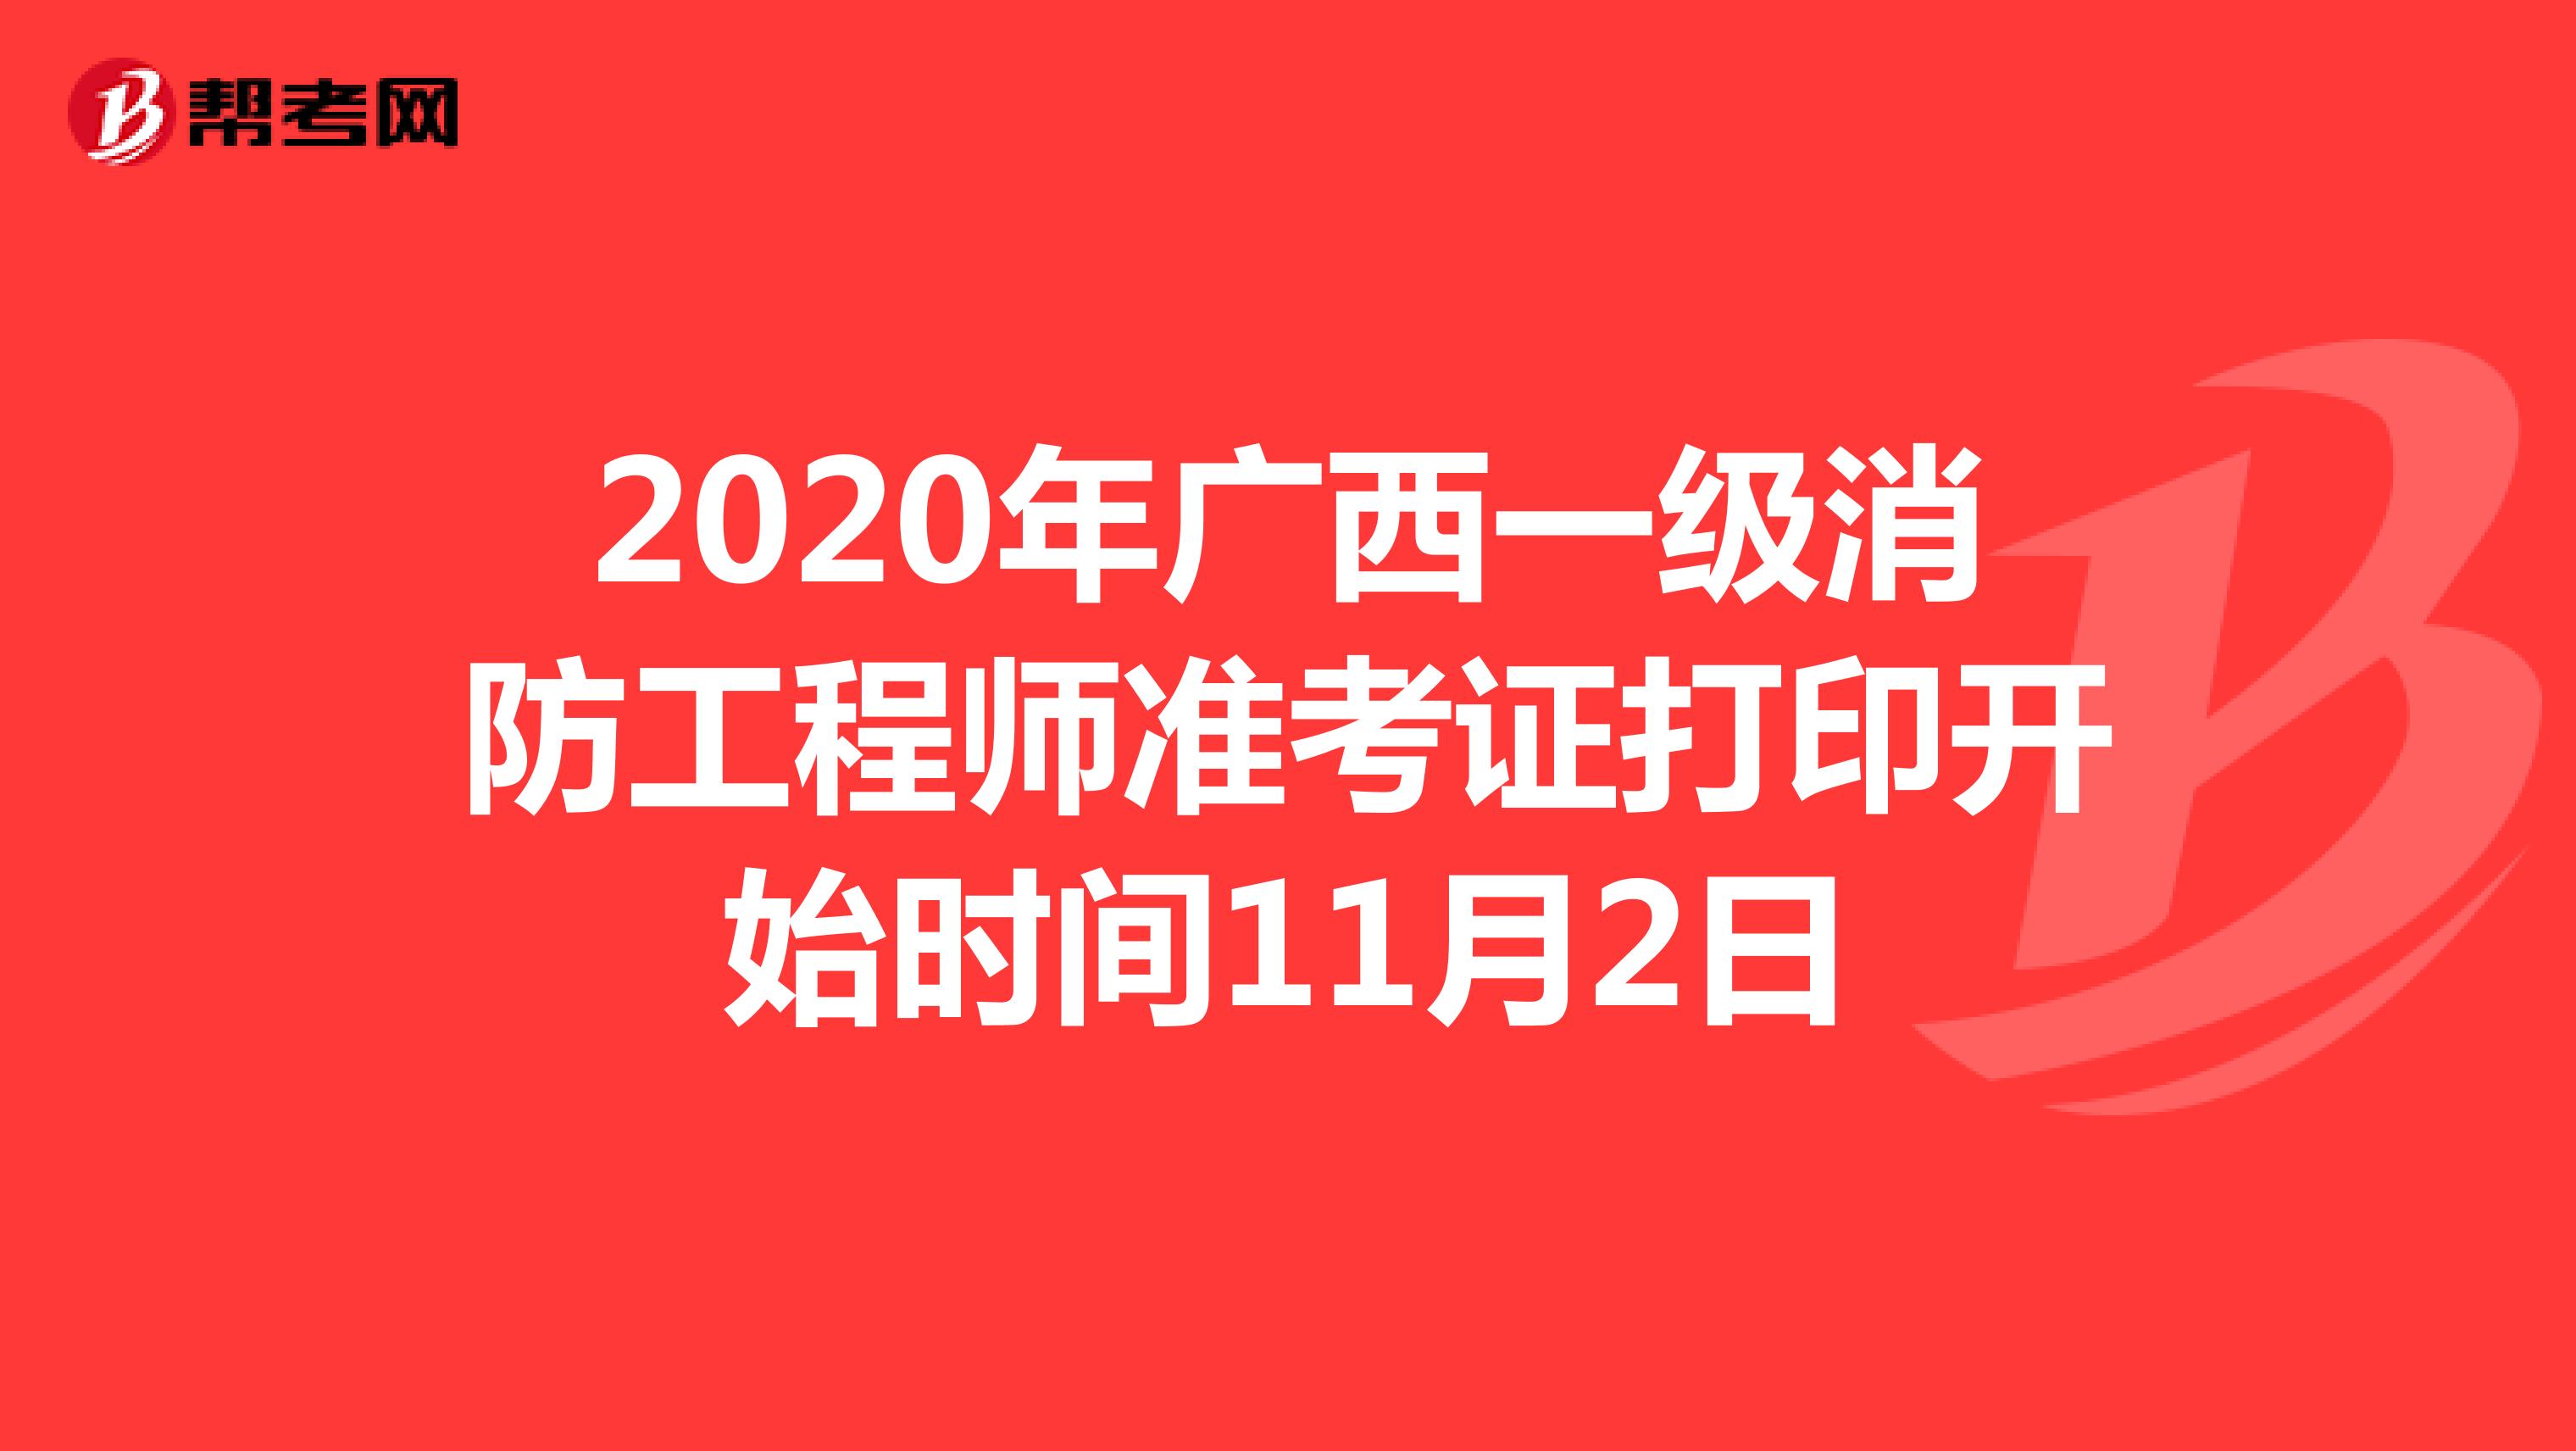 2020年广西一级消防工程师准考证打印开始时间11月2日